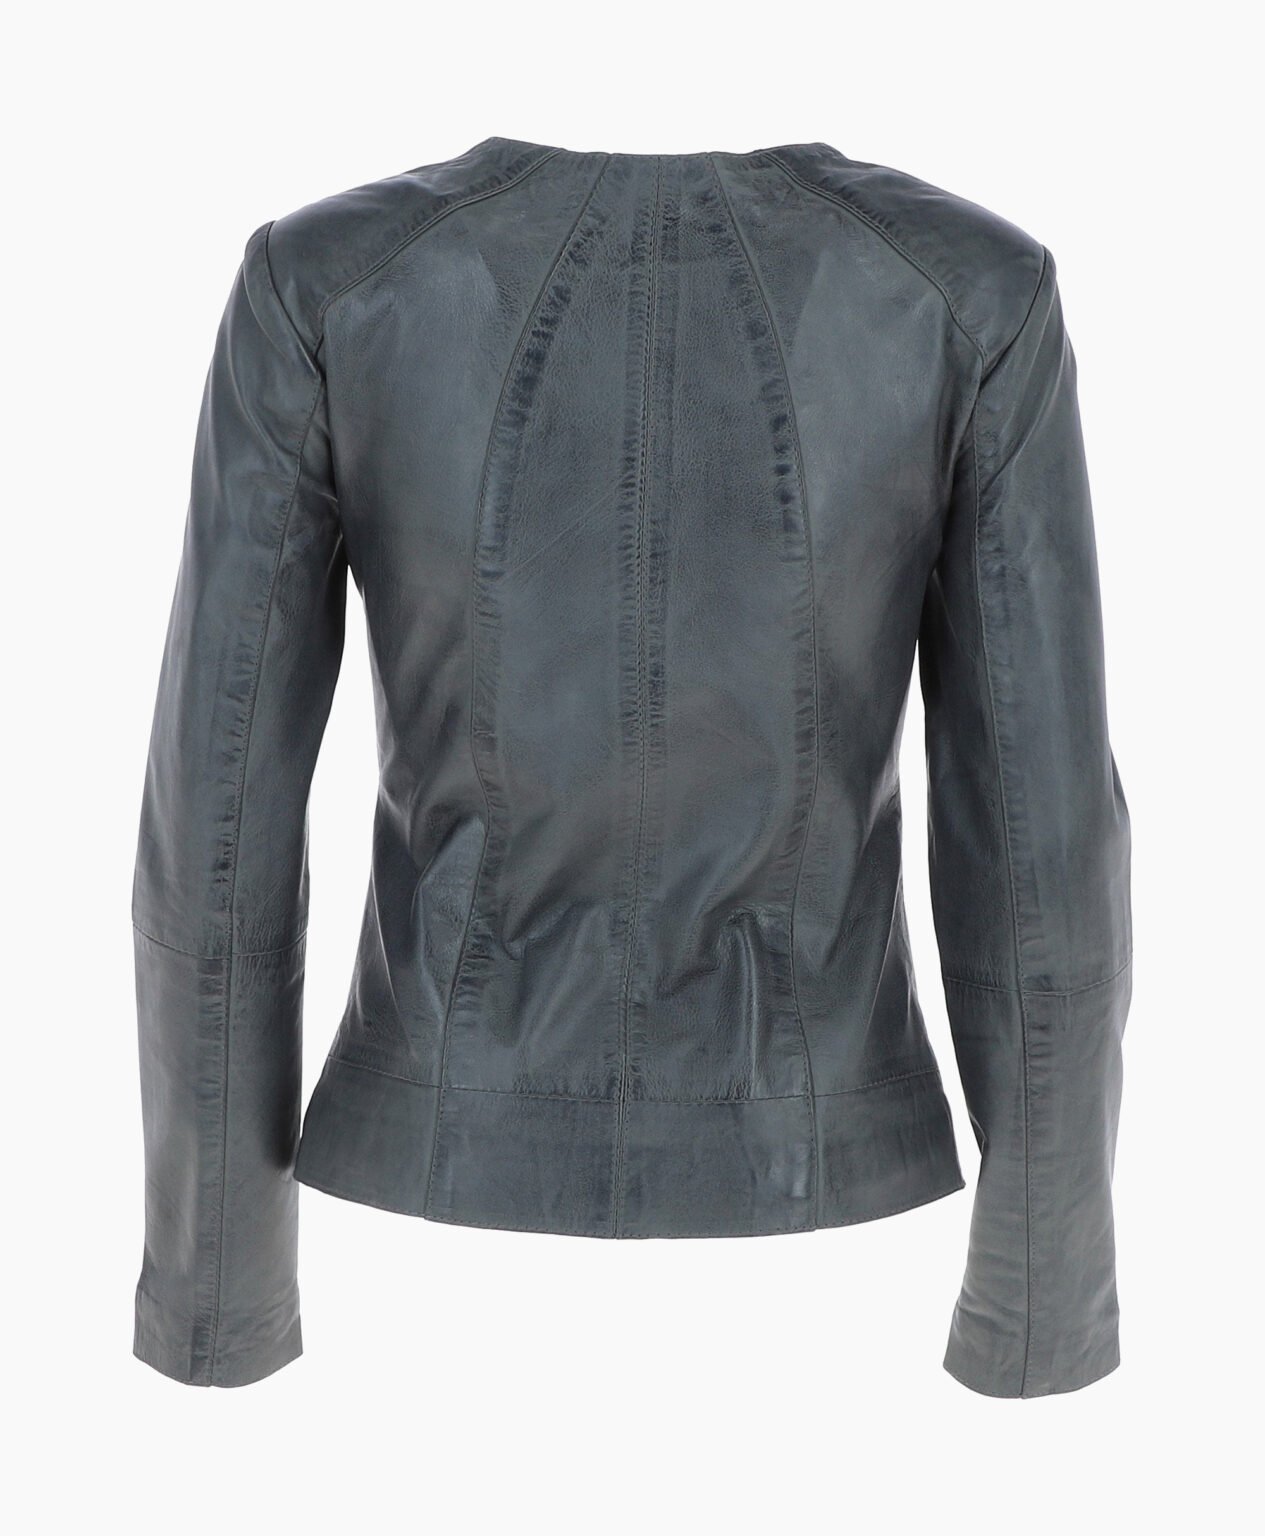 vogue-jacket-leather-jacket-gray-cordova-image-202